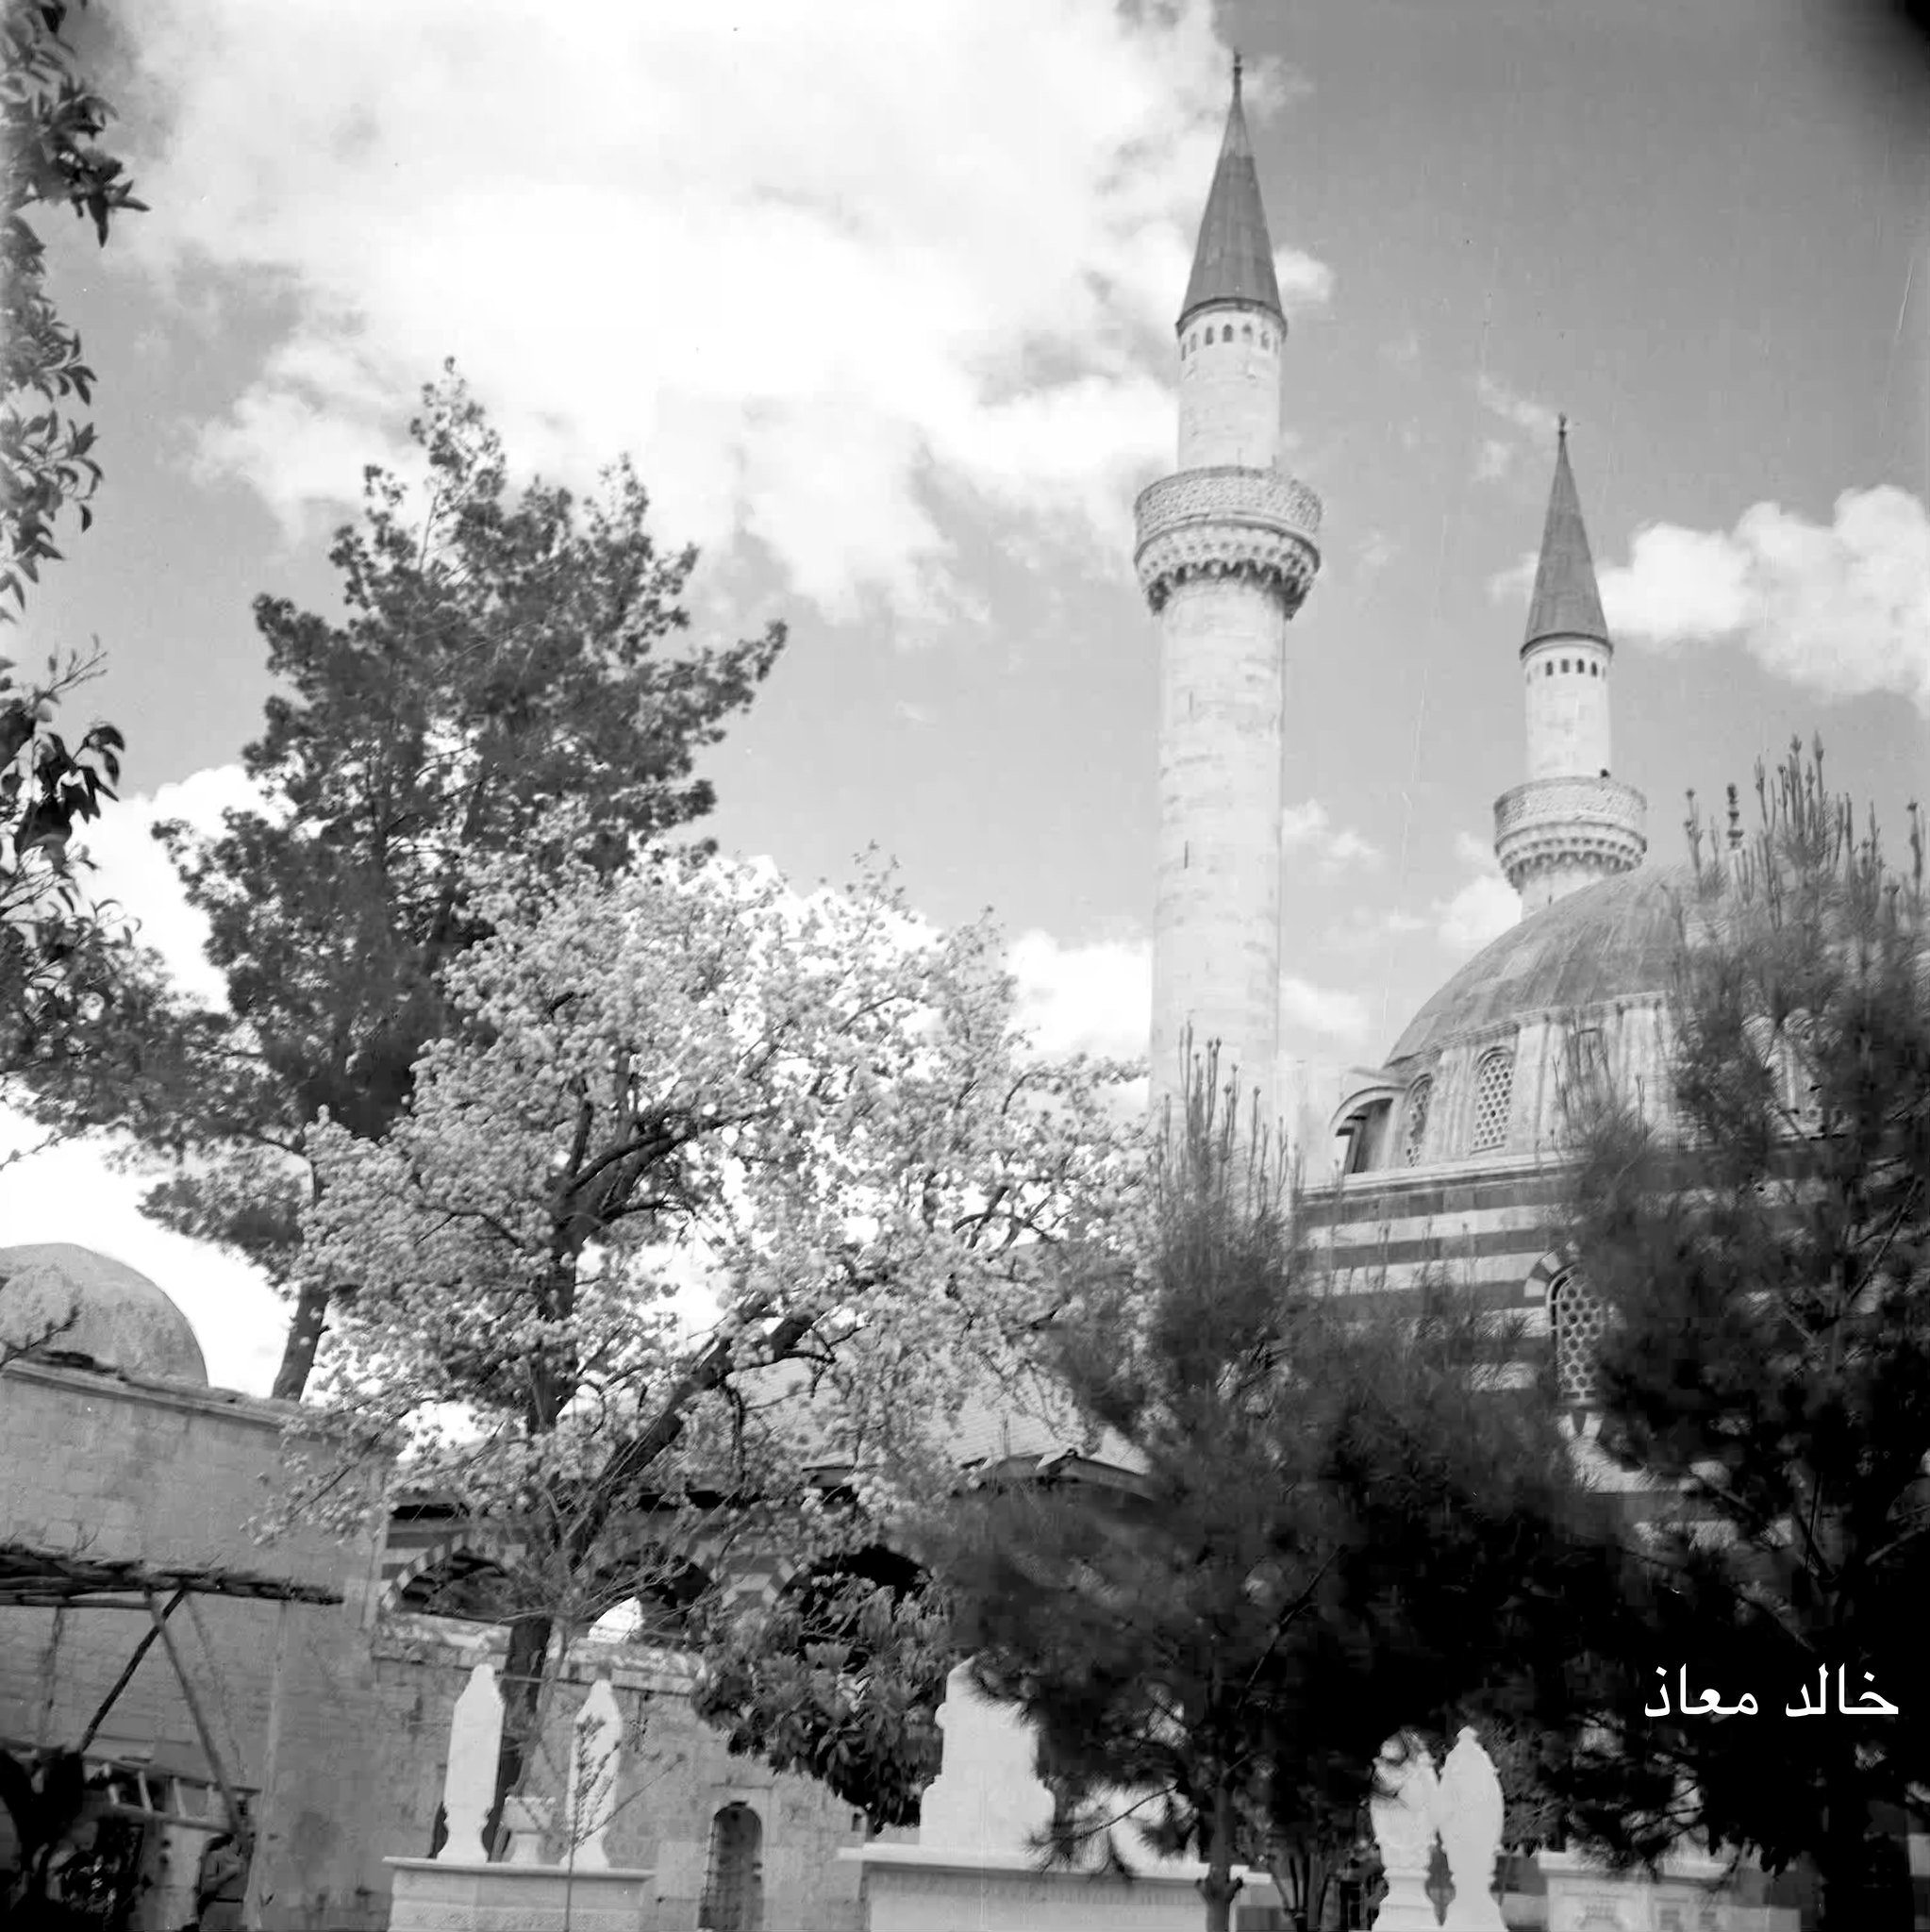 التاريخ السوري المعاصر - التكية السليمانية في دمشق عام 1956م